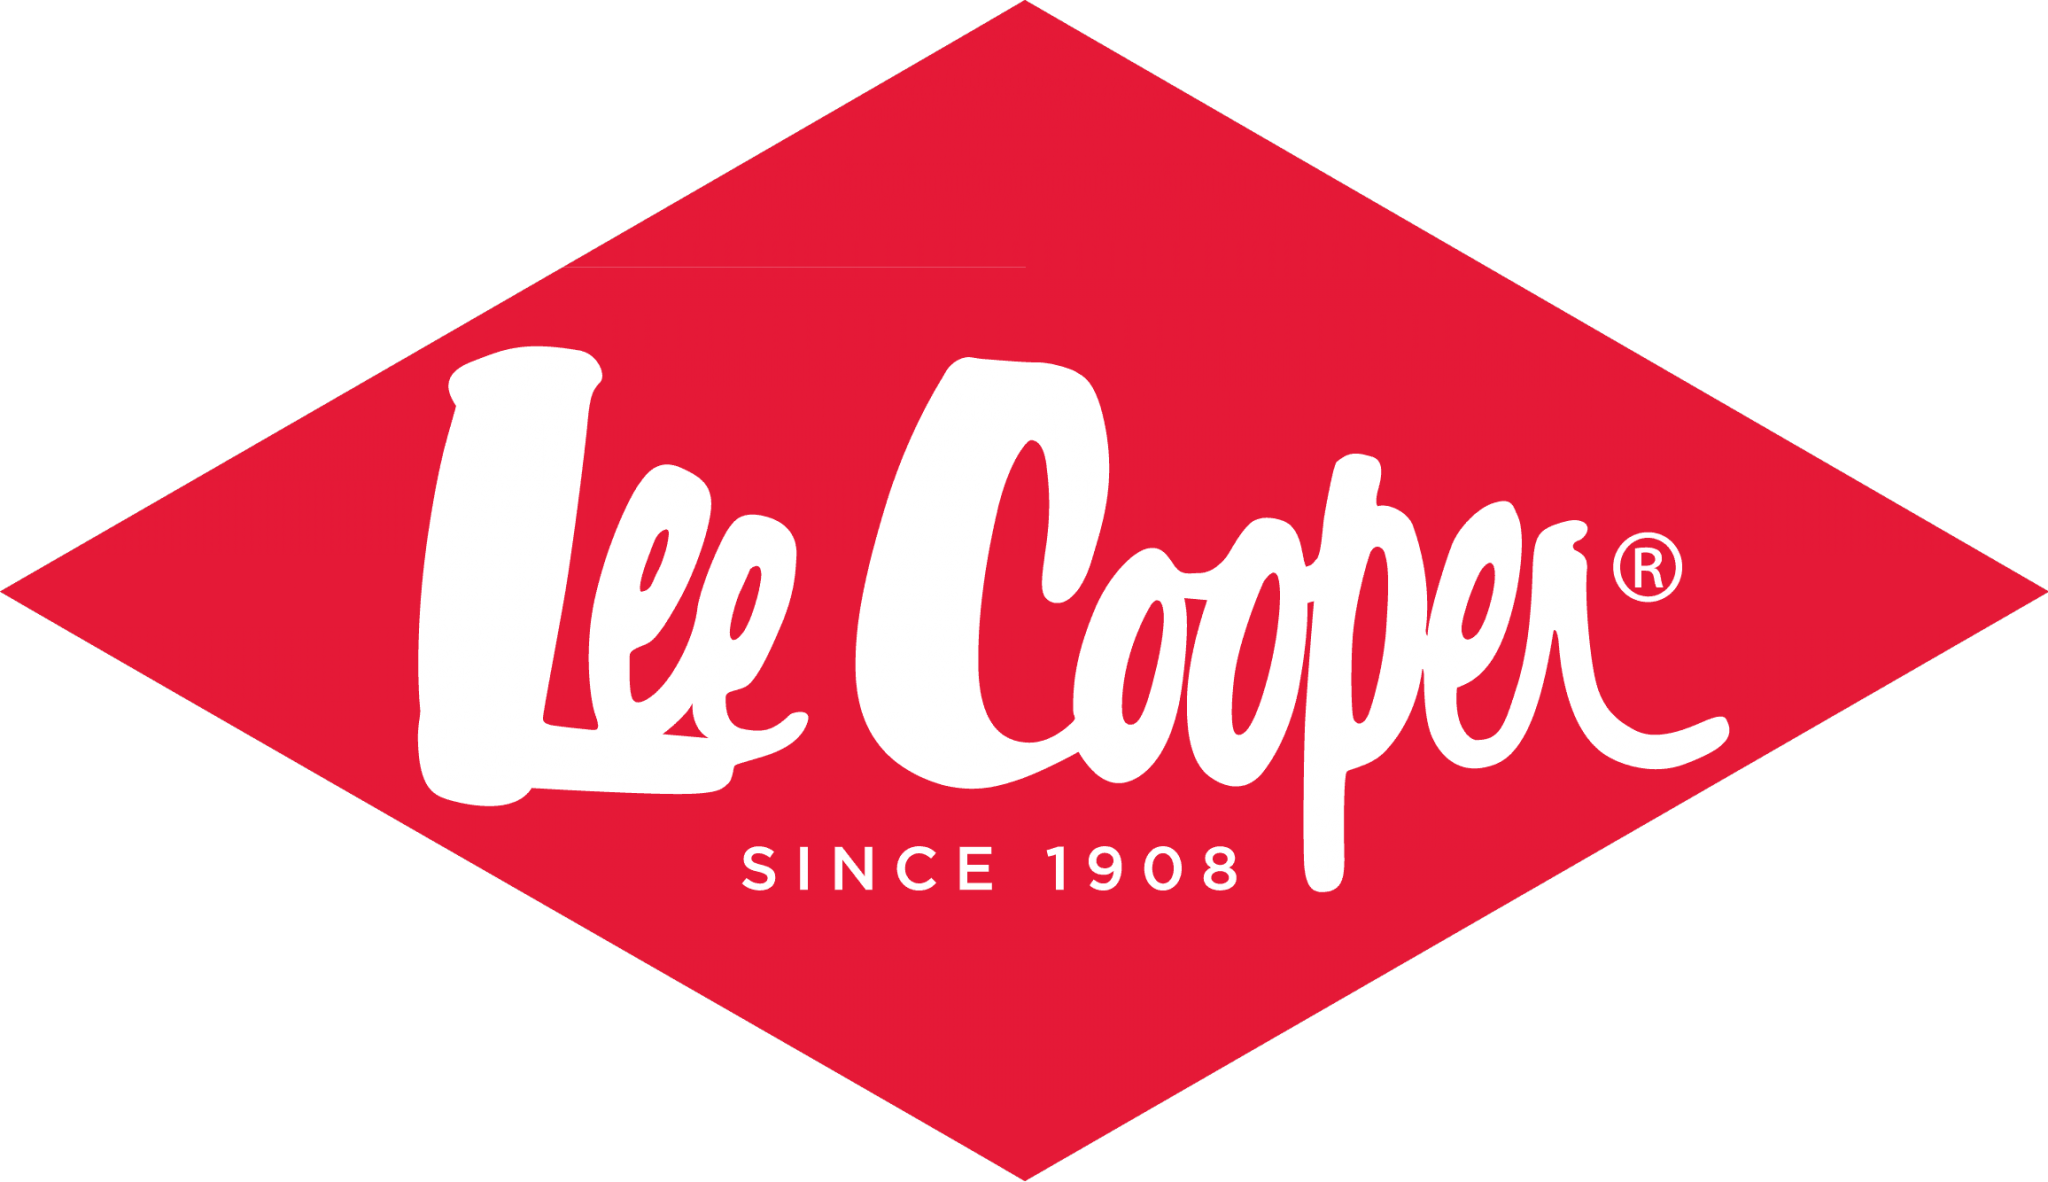 Leeenacooper